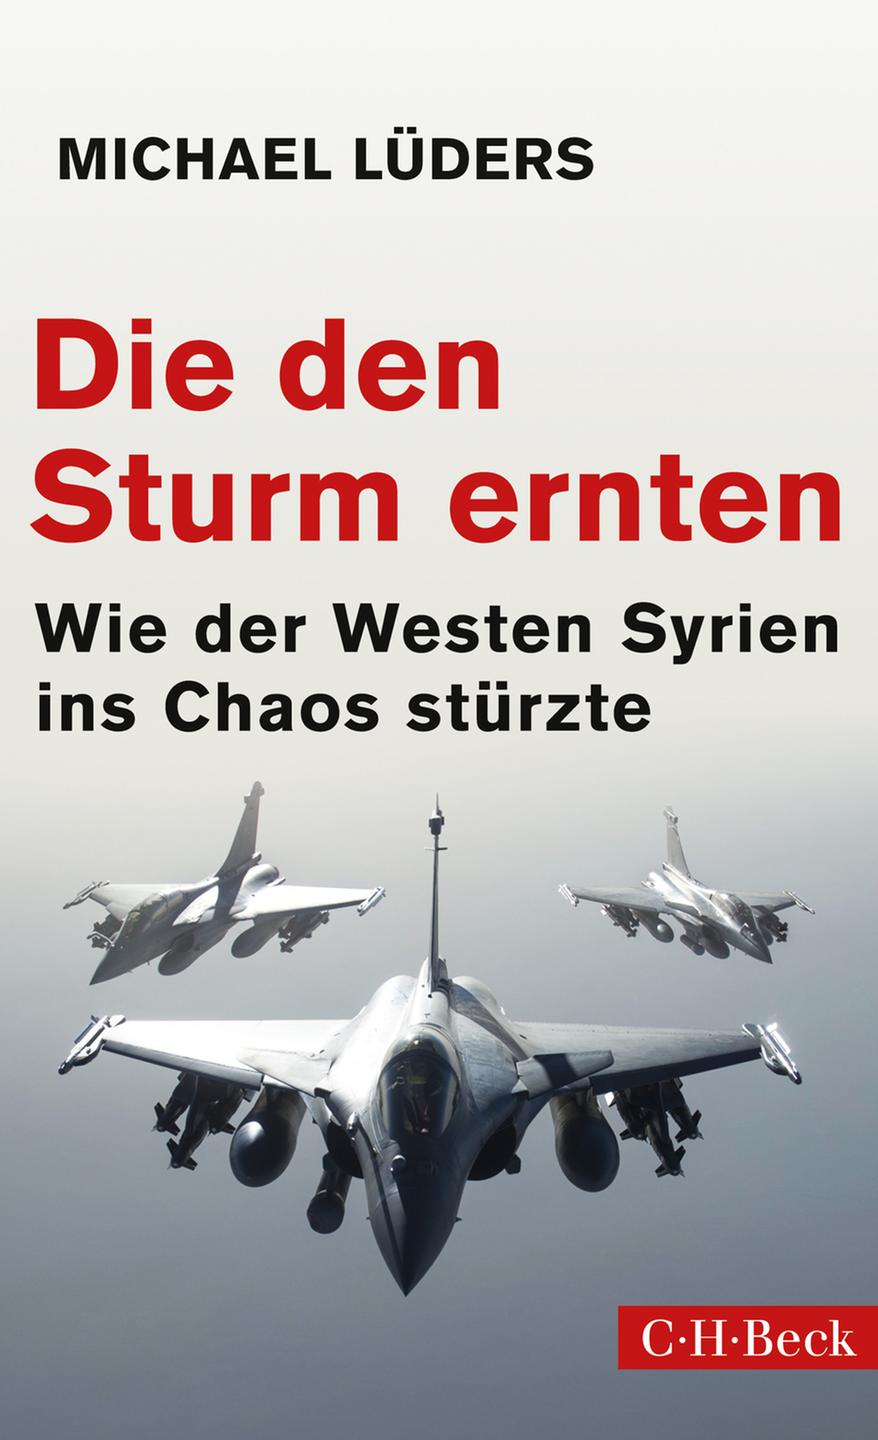 Buchcover: Michael Lüders "Die den Sturm ernten. Wie der Westen Syrien ins Chaos stürzte"